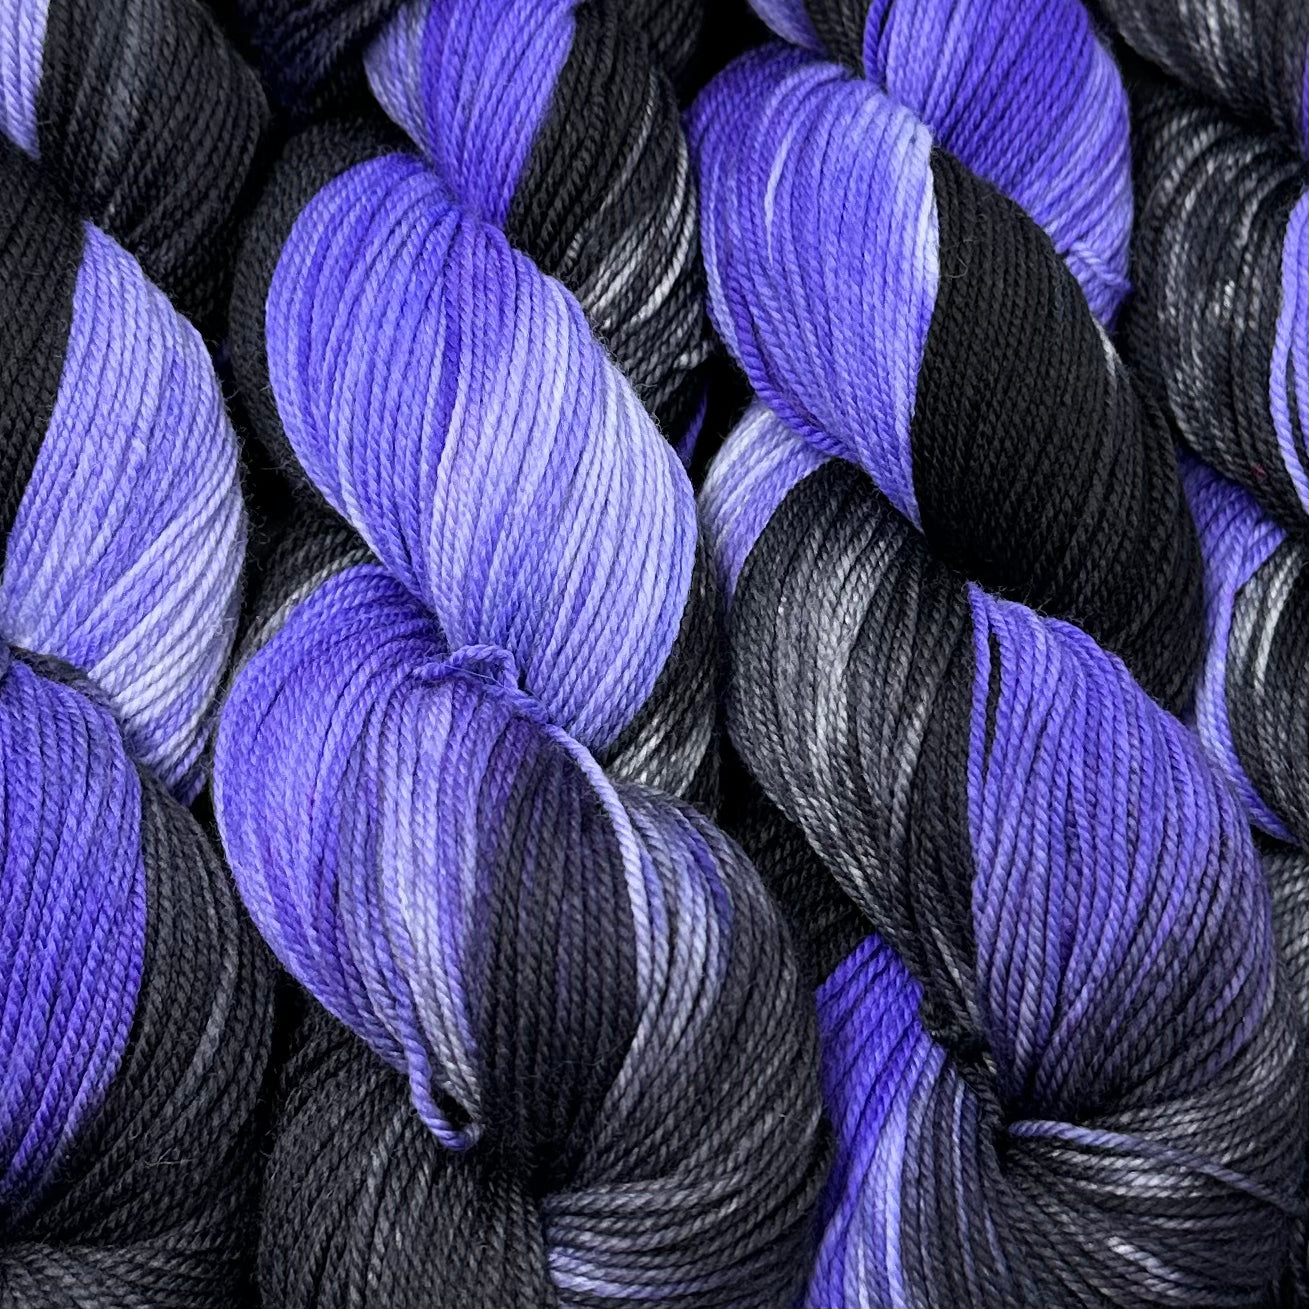 Align sport weight yarn Galaxy – Deep Dyed Yarns